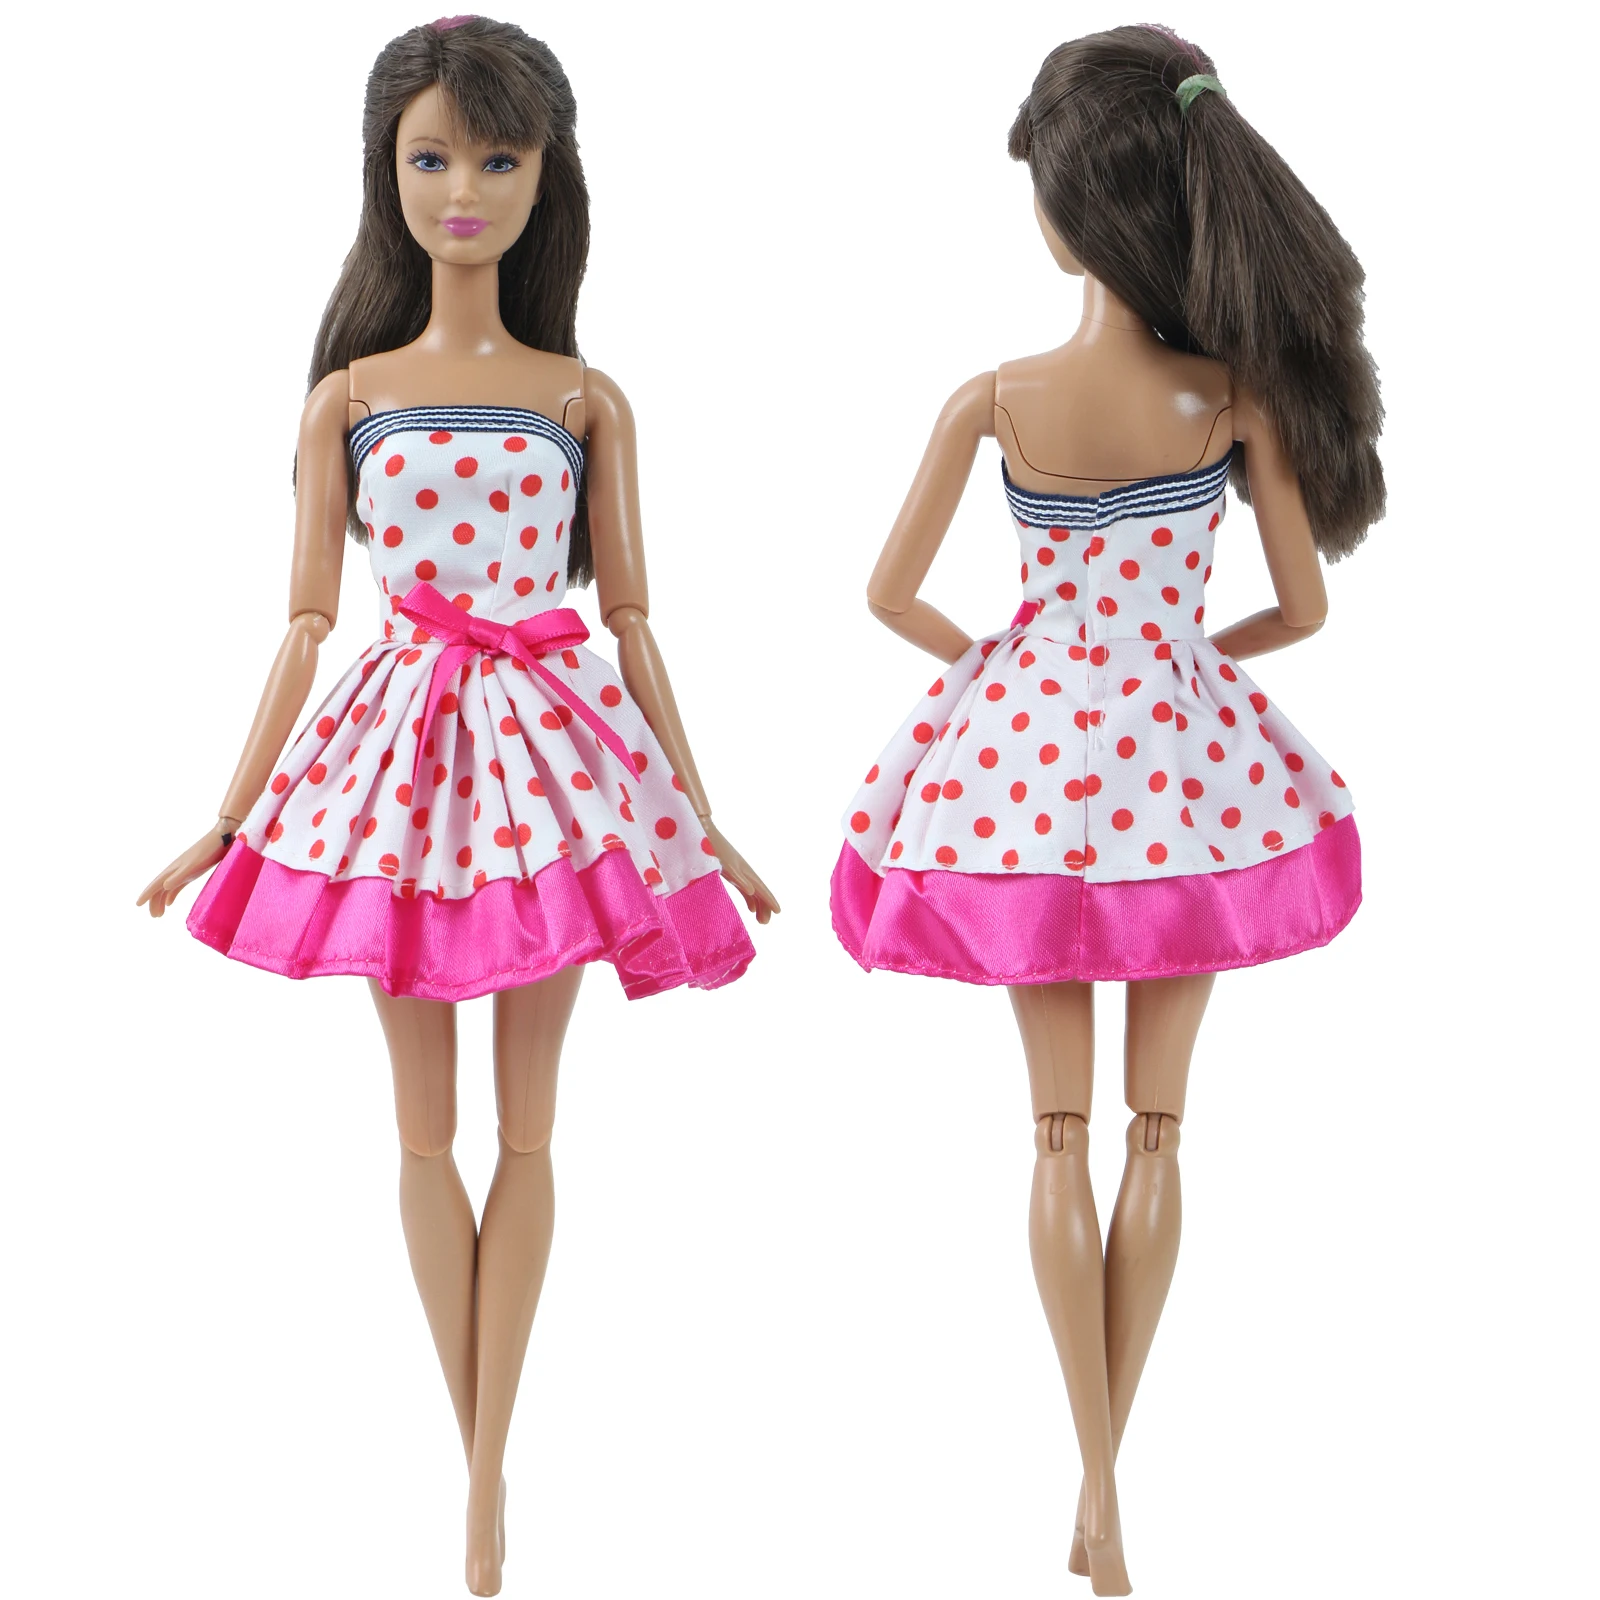 Модное платье куклы ручной работы для куклы Барби, повседневная одежда, наряд для свиданий, юбка, короткое платье, аксессуары для кукольной одежды, игрушка